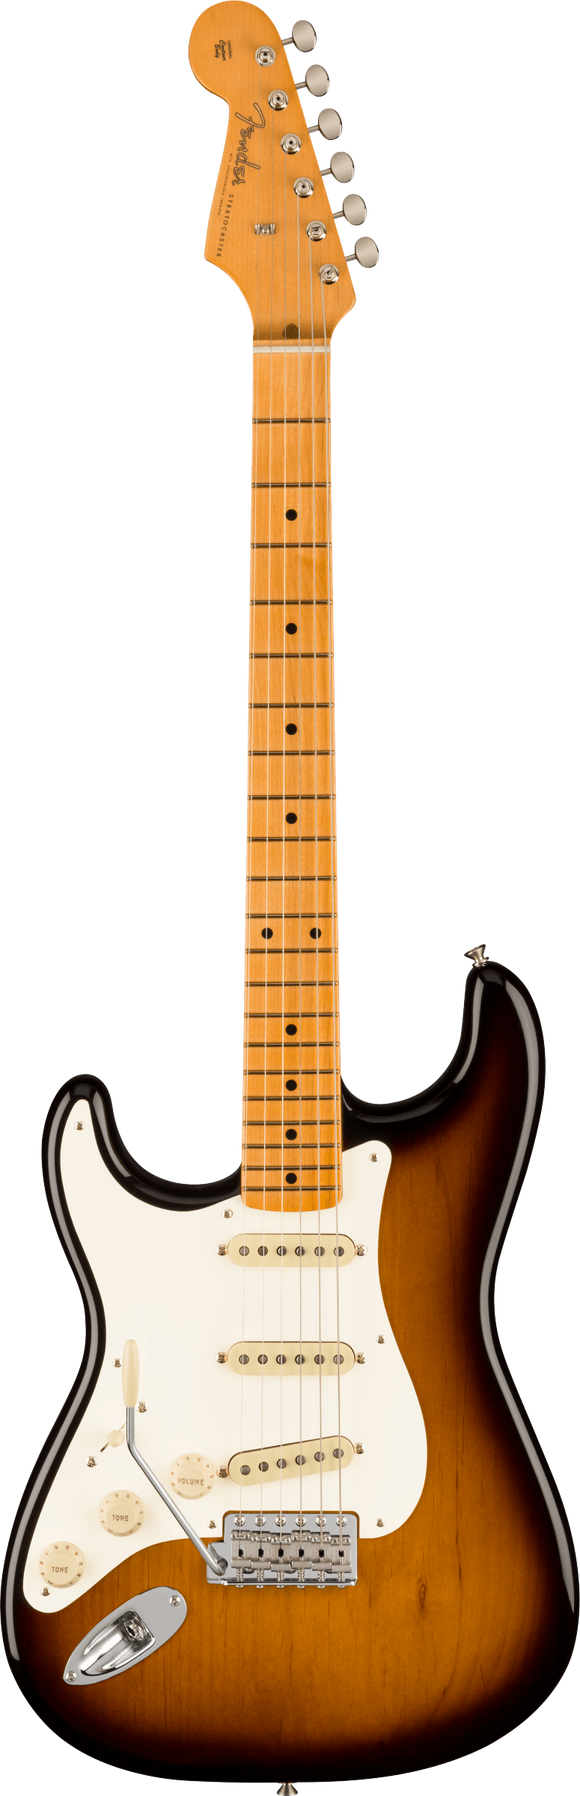 Fender American Vintage II 1957 Stratocaster Left-Hand, Maple Fingerboard, 2-Color Sunburst